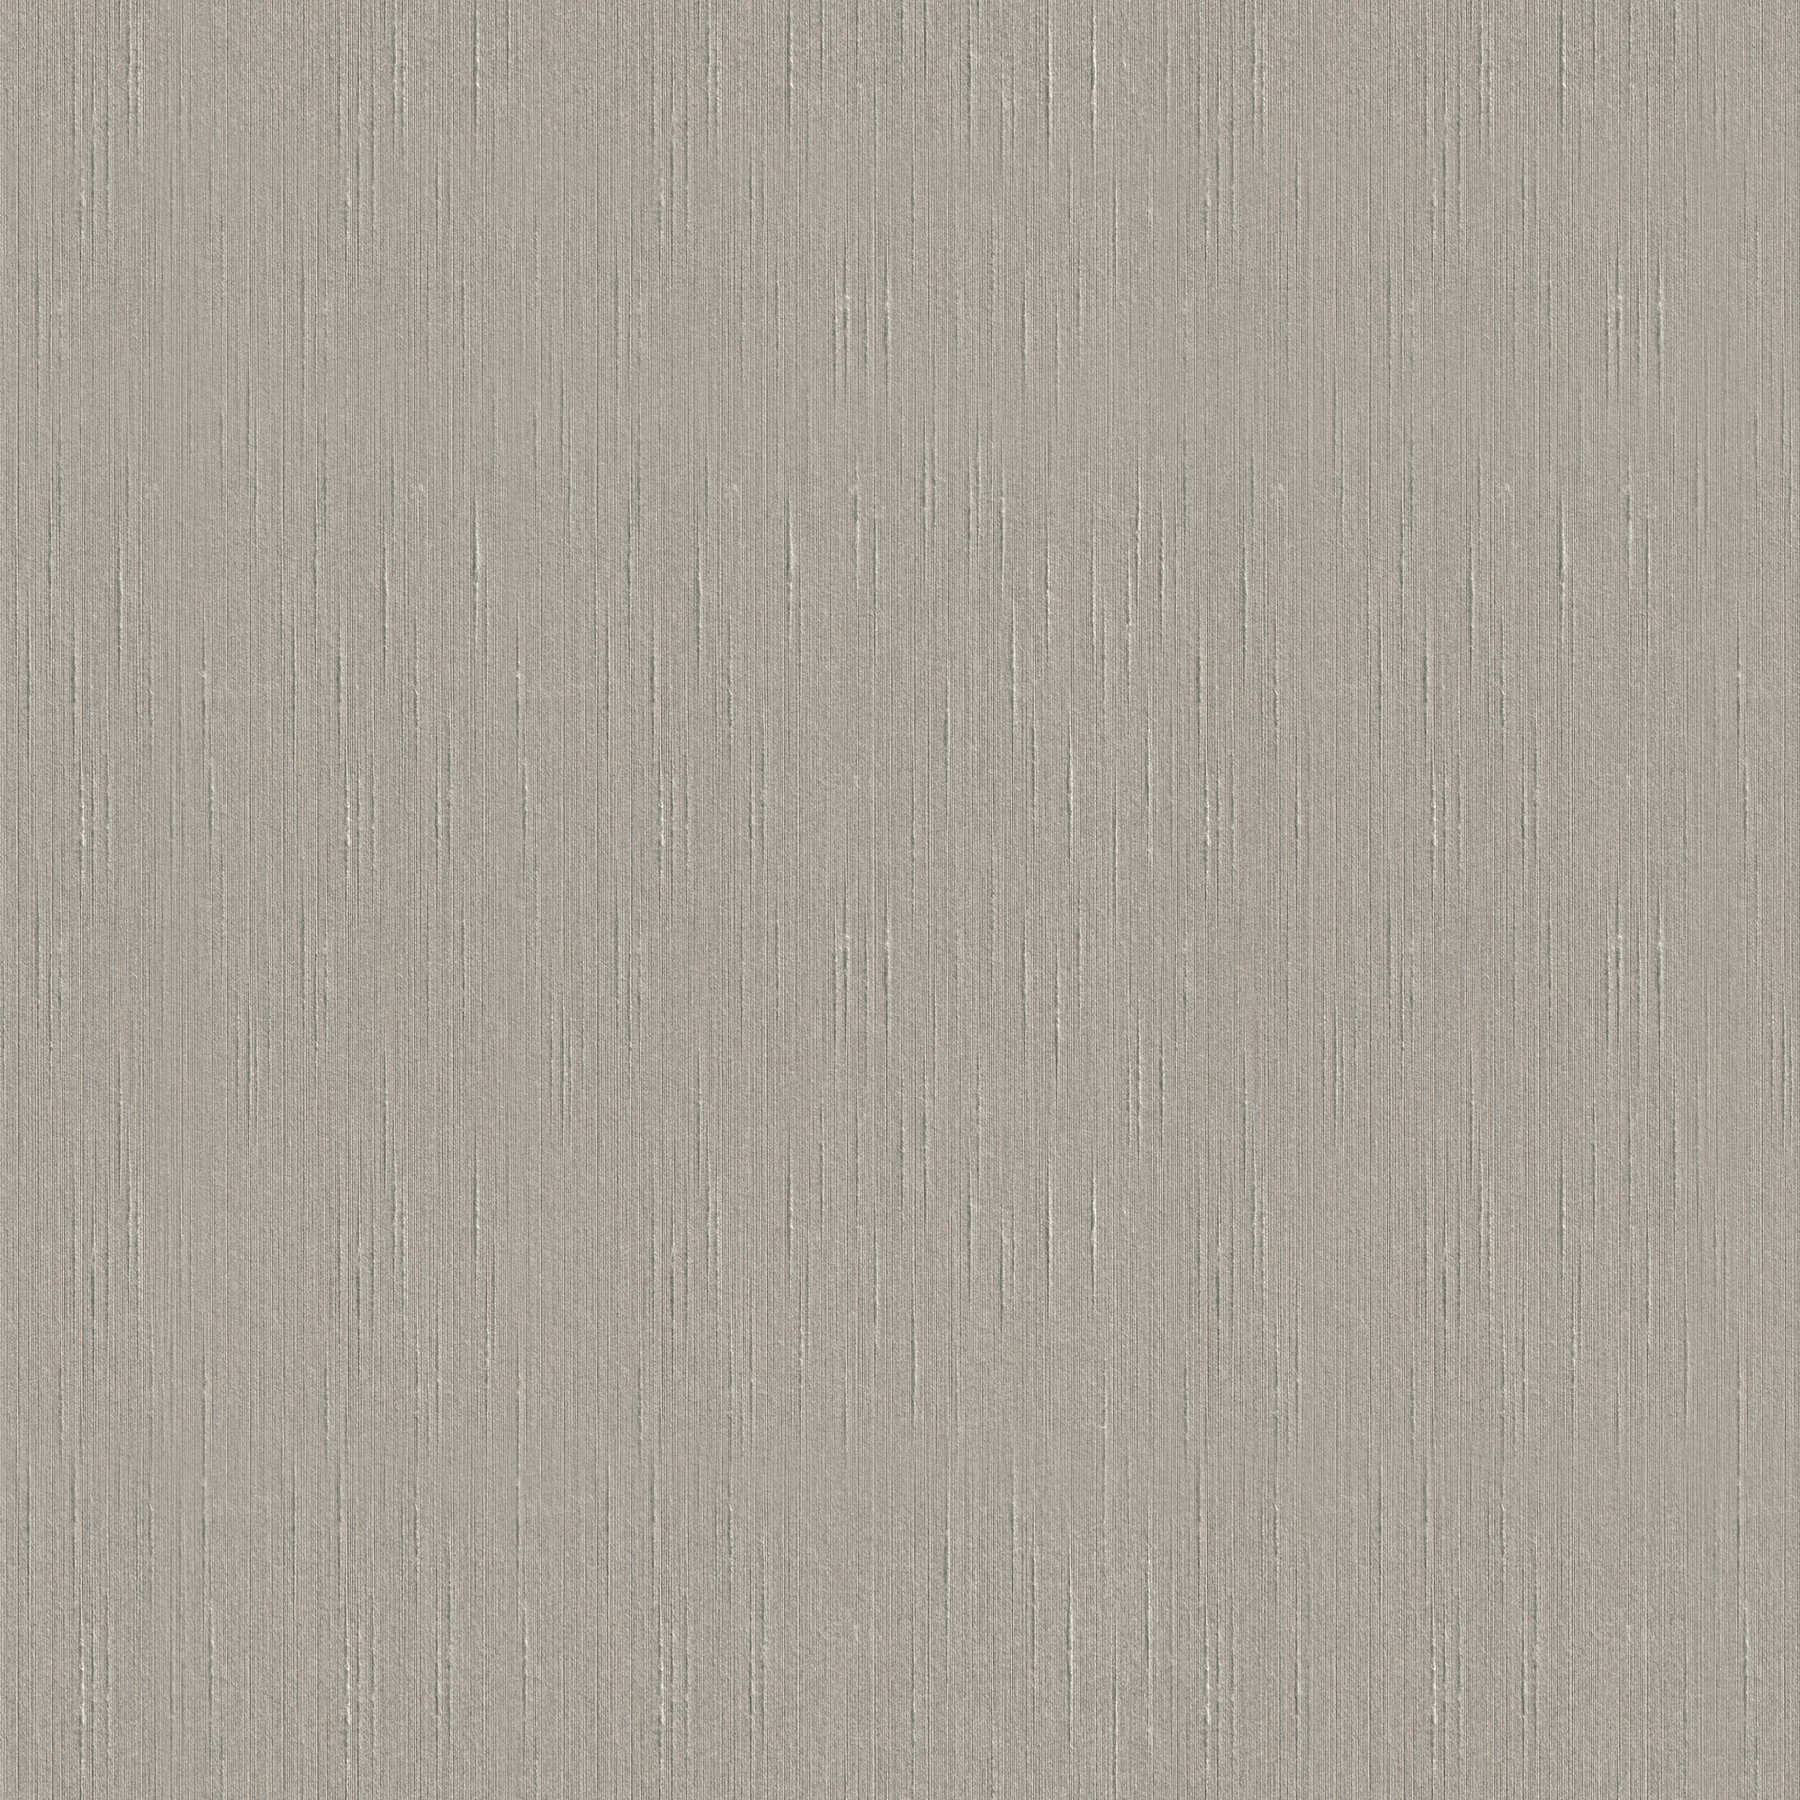 Papier peint intissé avec structure textile & aspect soie - gris
